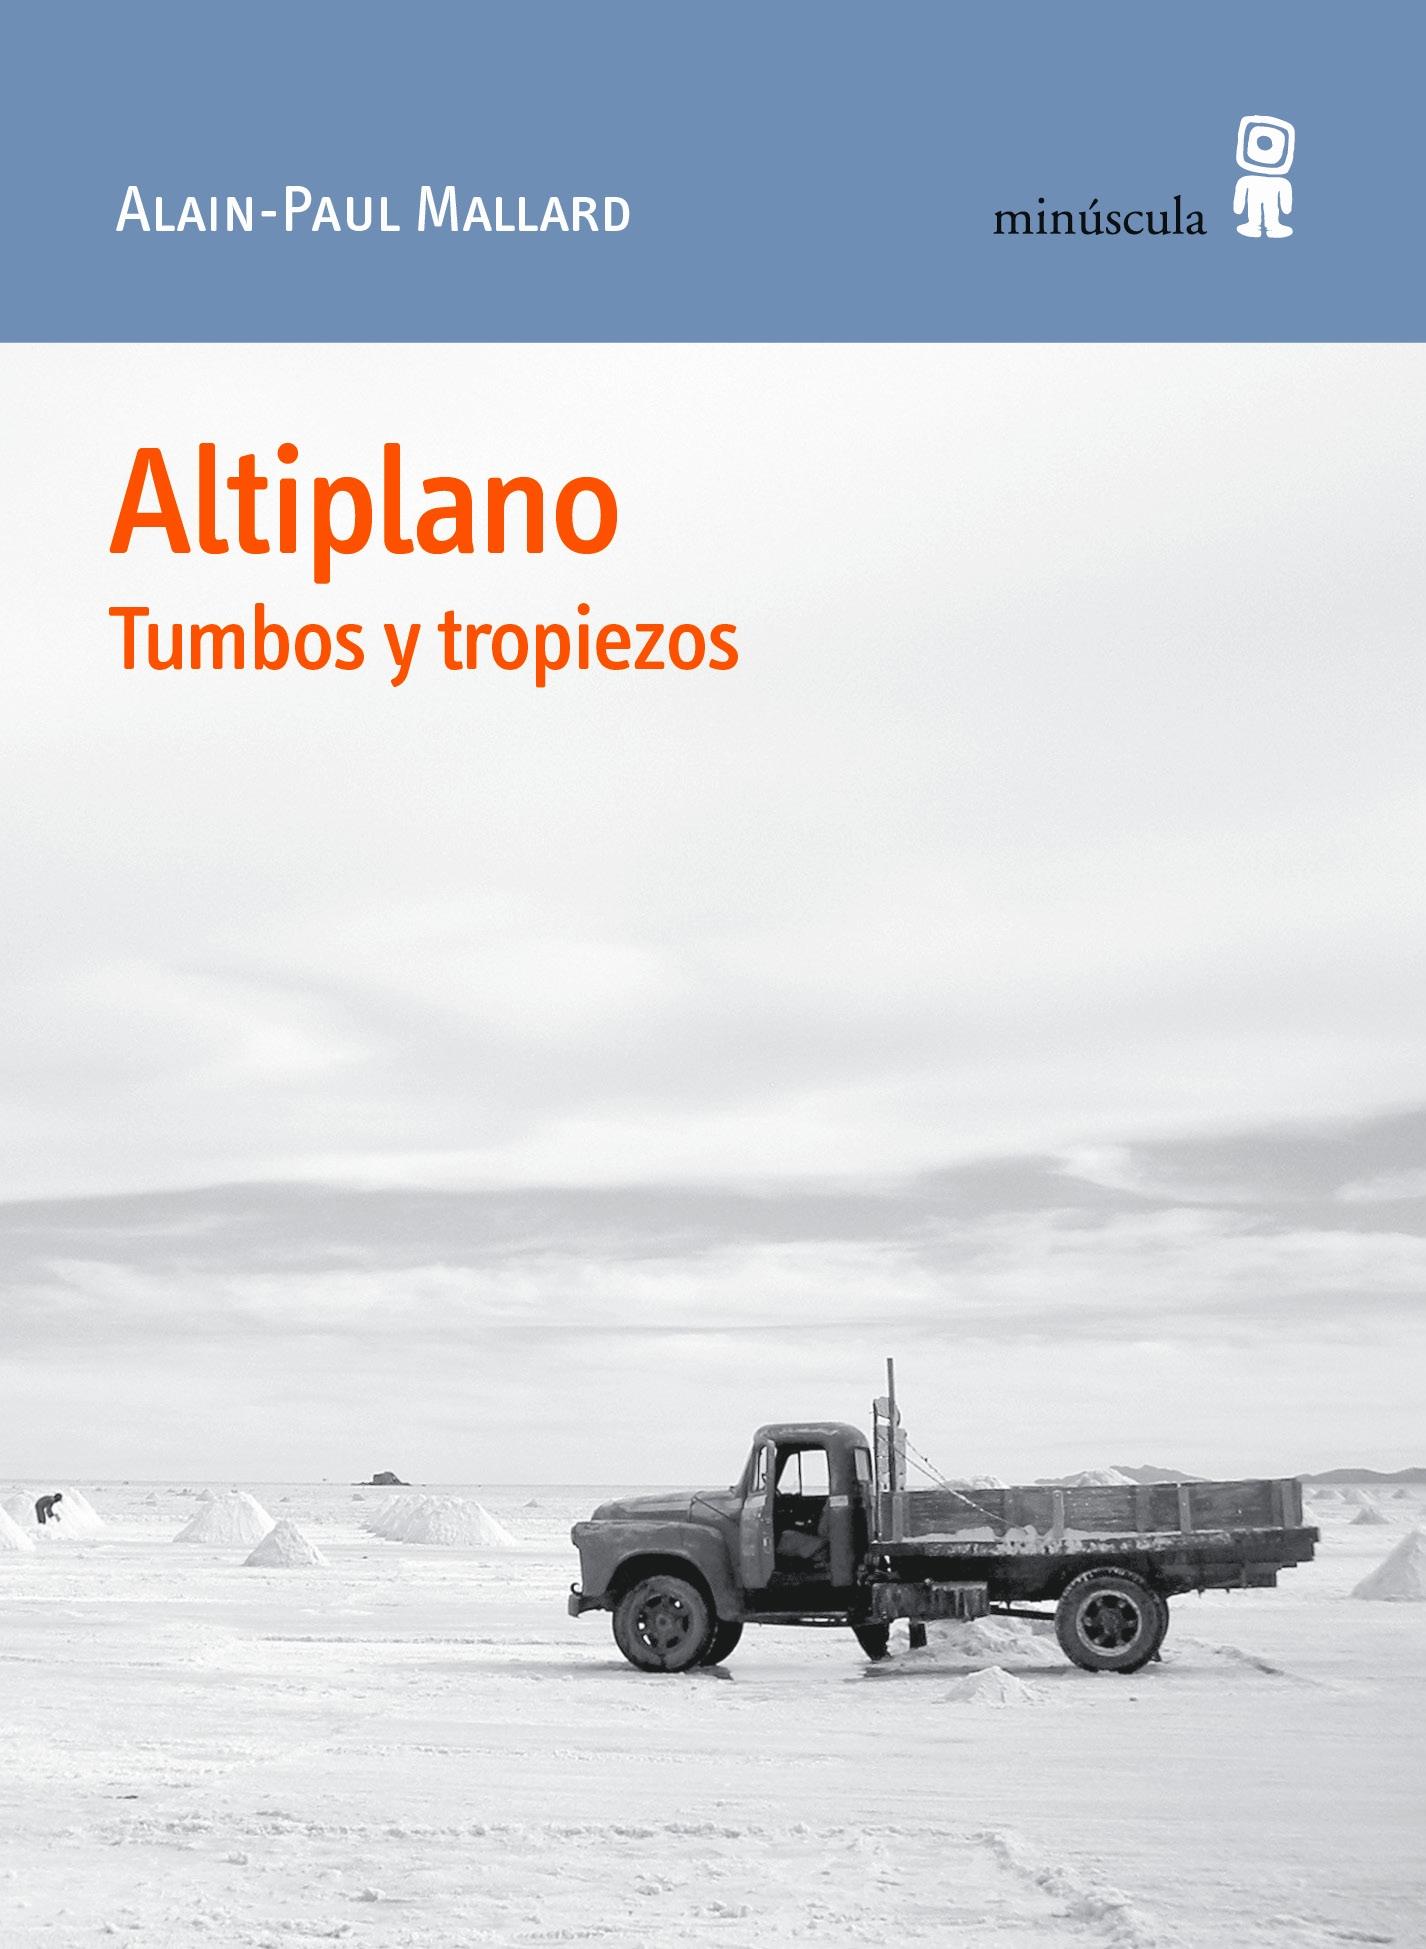 Altiplano "Tumbos y tropiezos". 